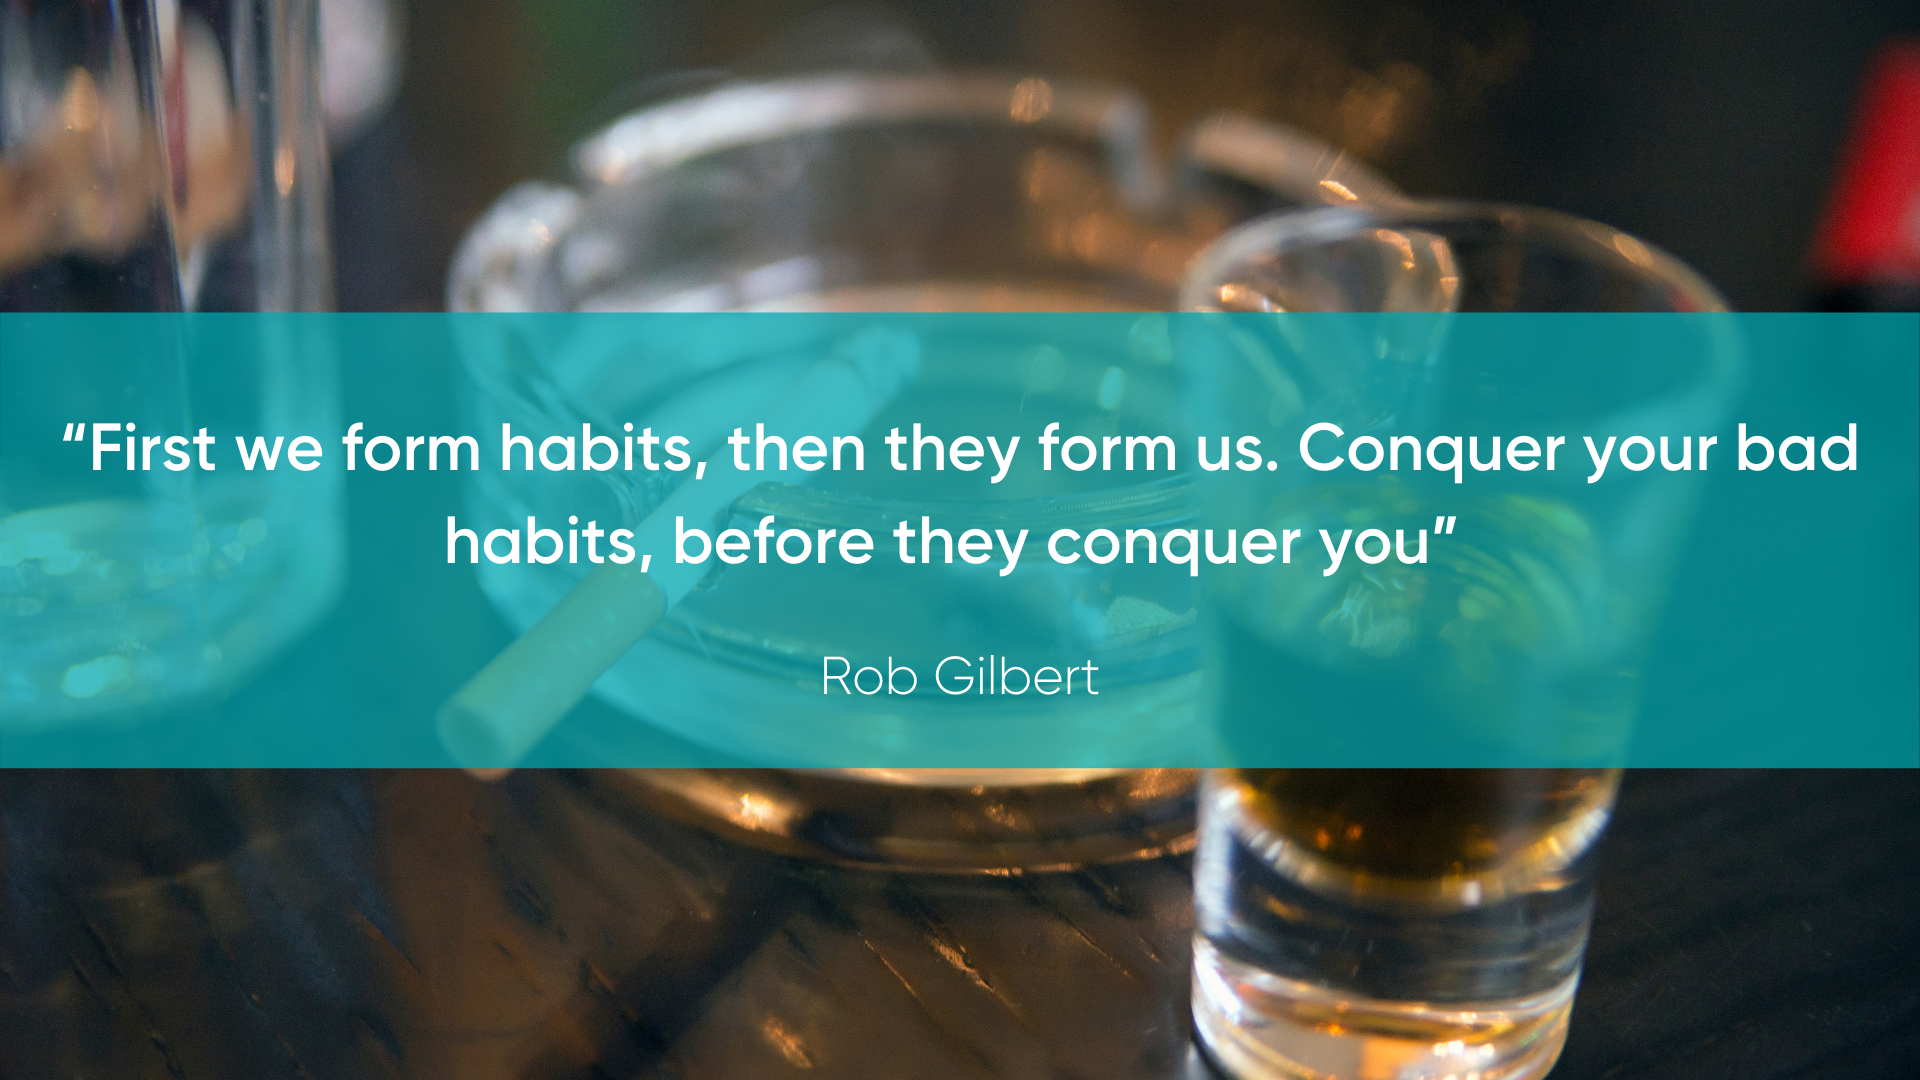 Rob Gilbert Conquer Bad Habits